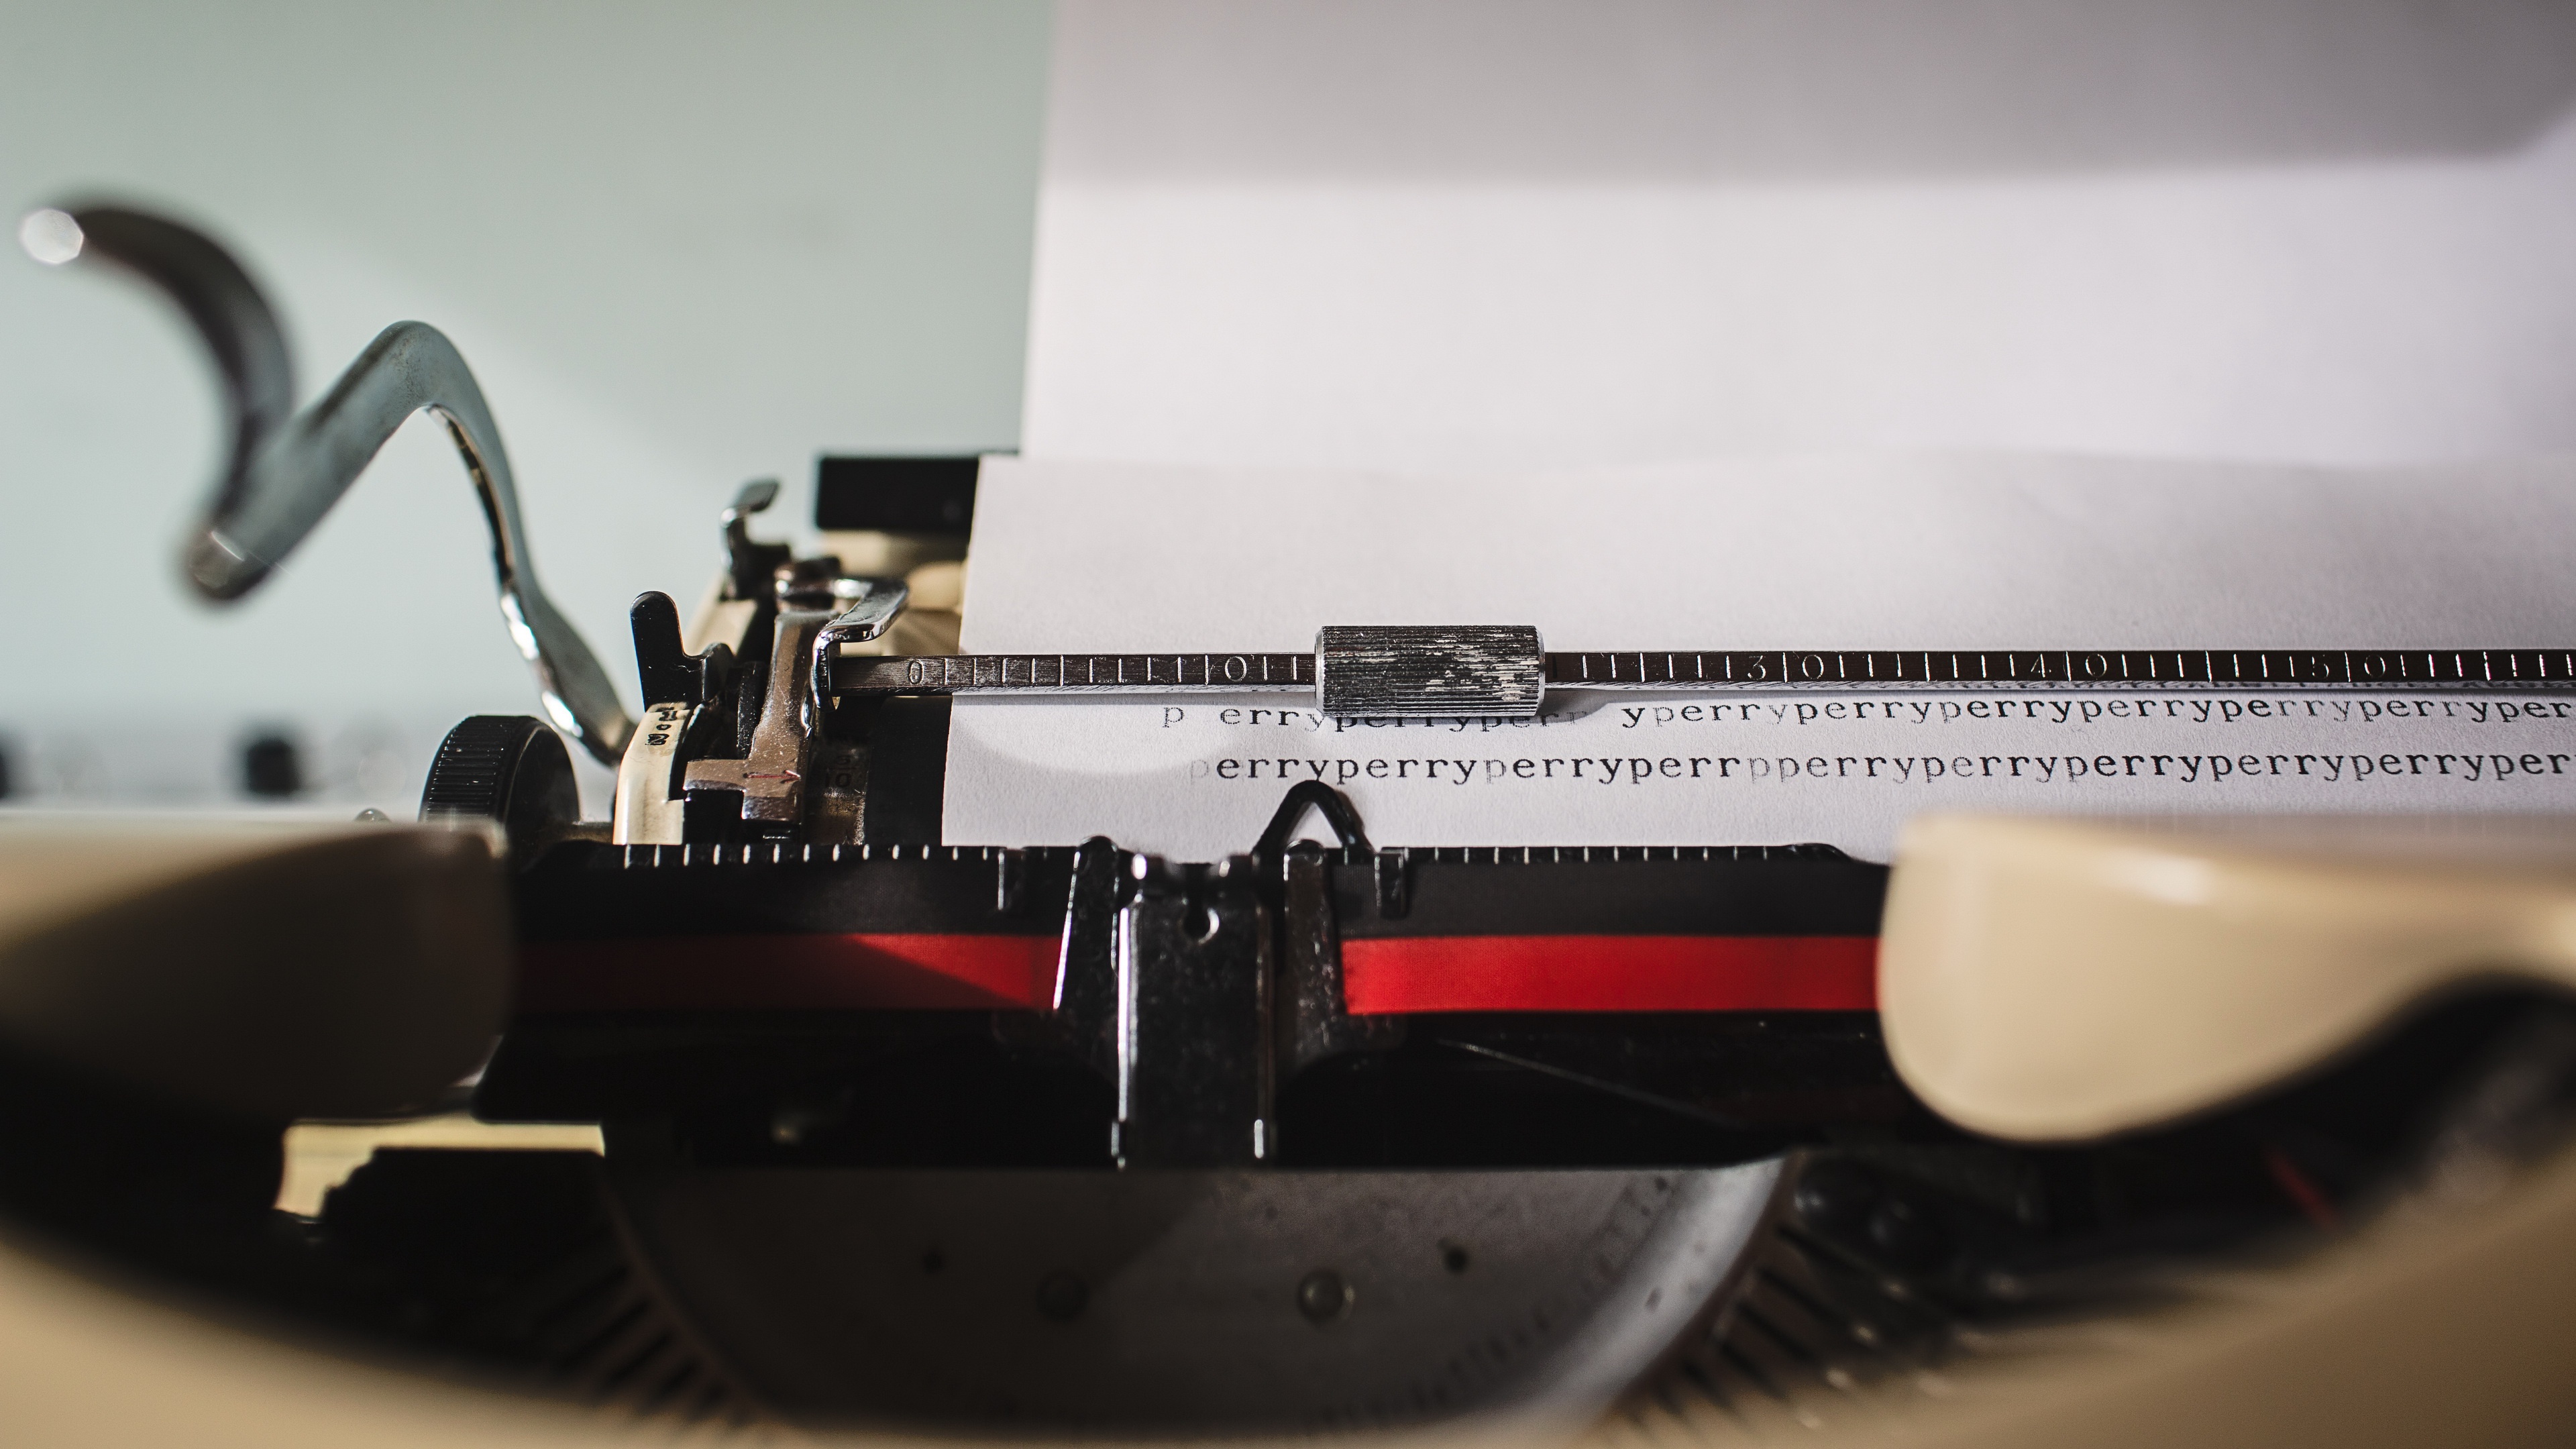 Man Made Typewriter 3840x2160